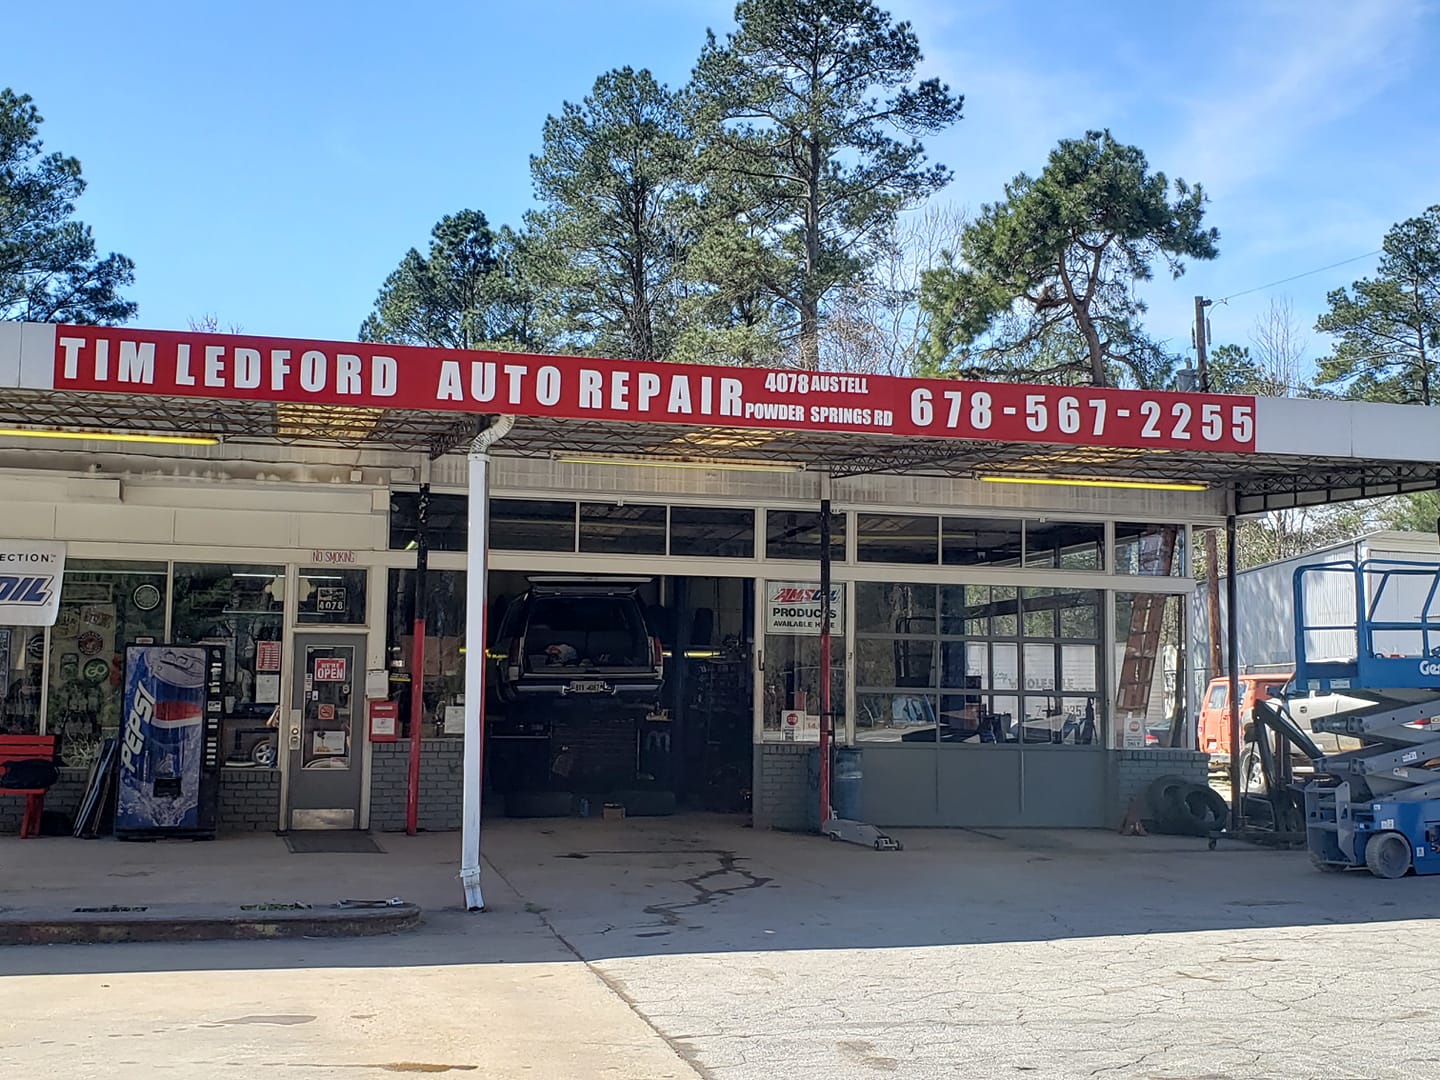 Tim Ledford Towing & Auto Repair